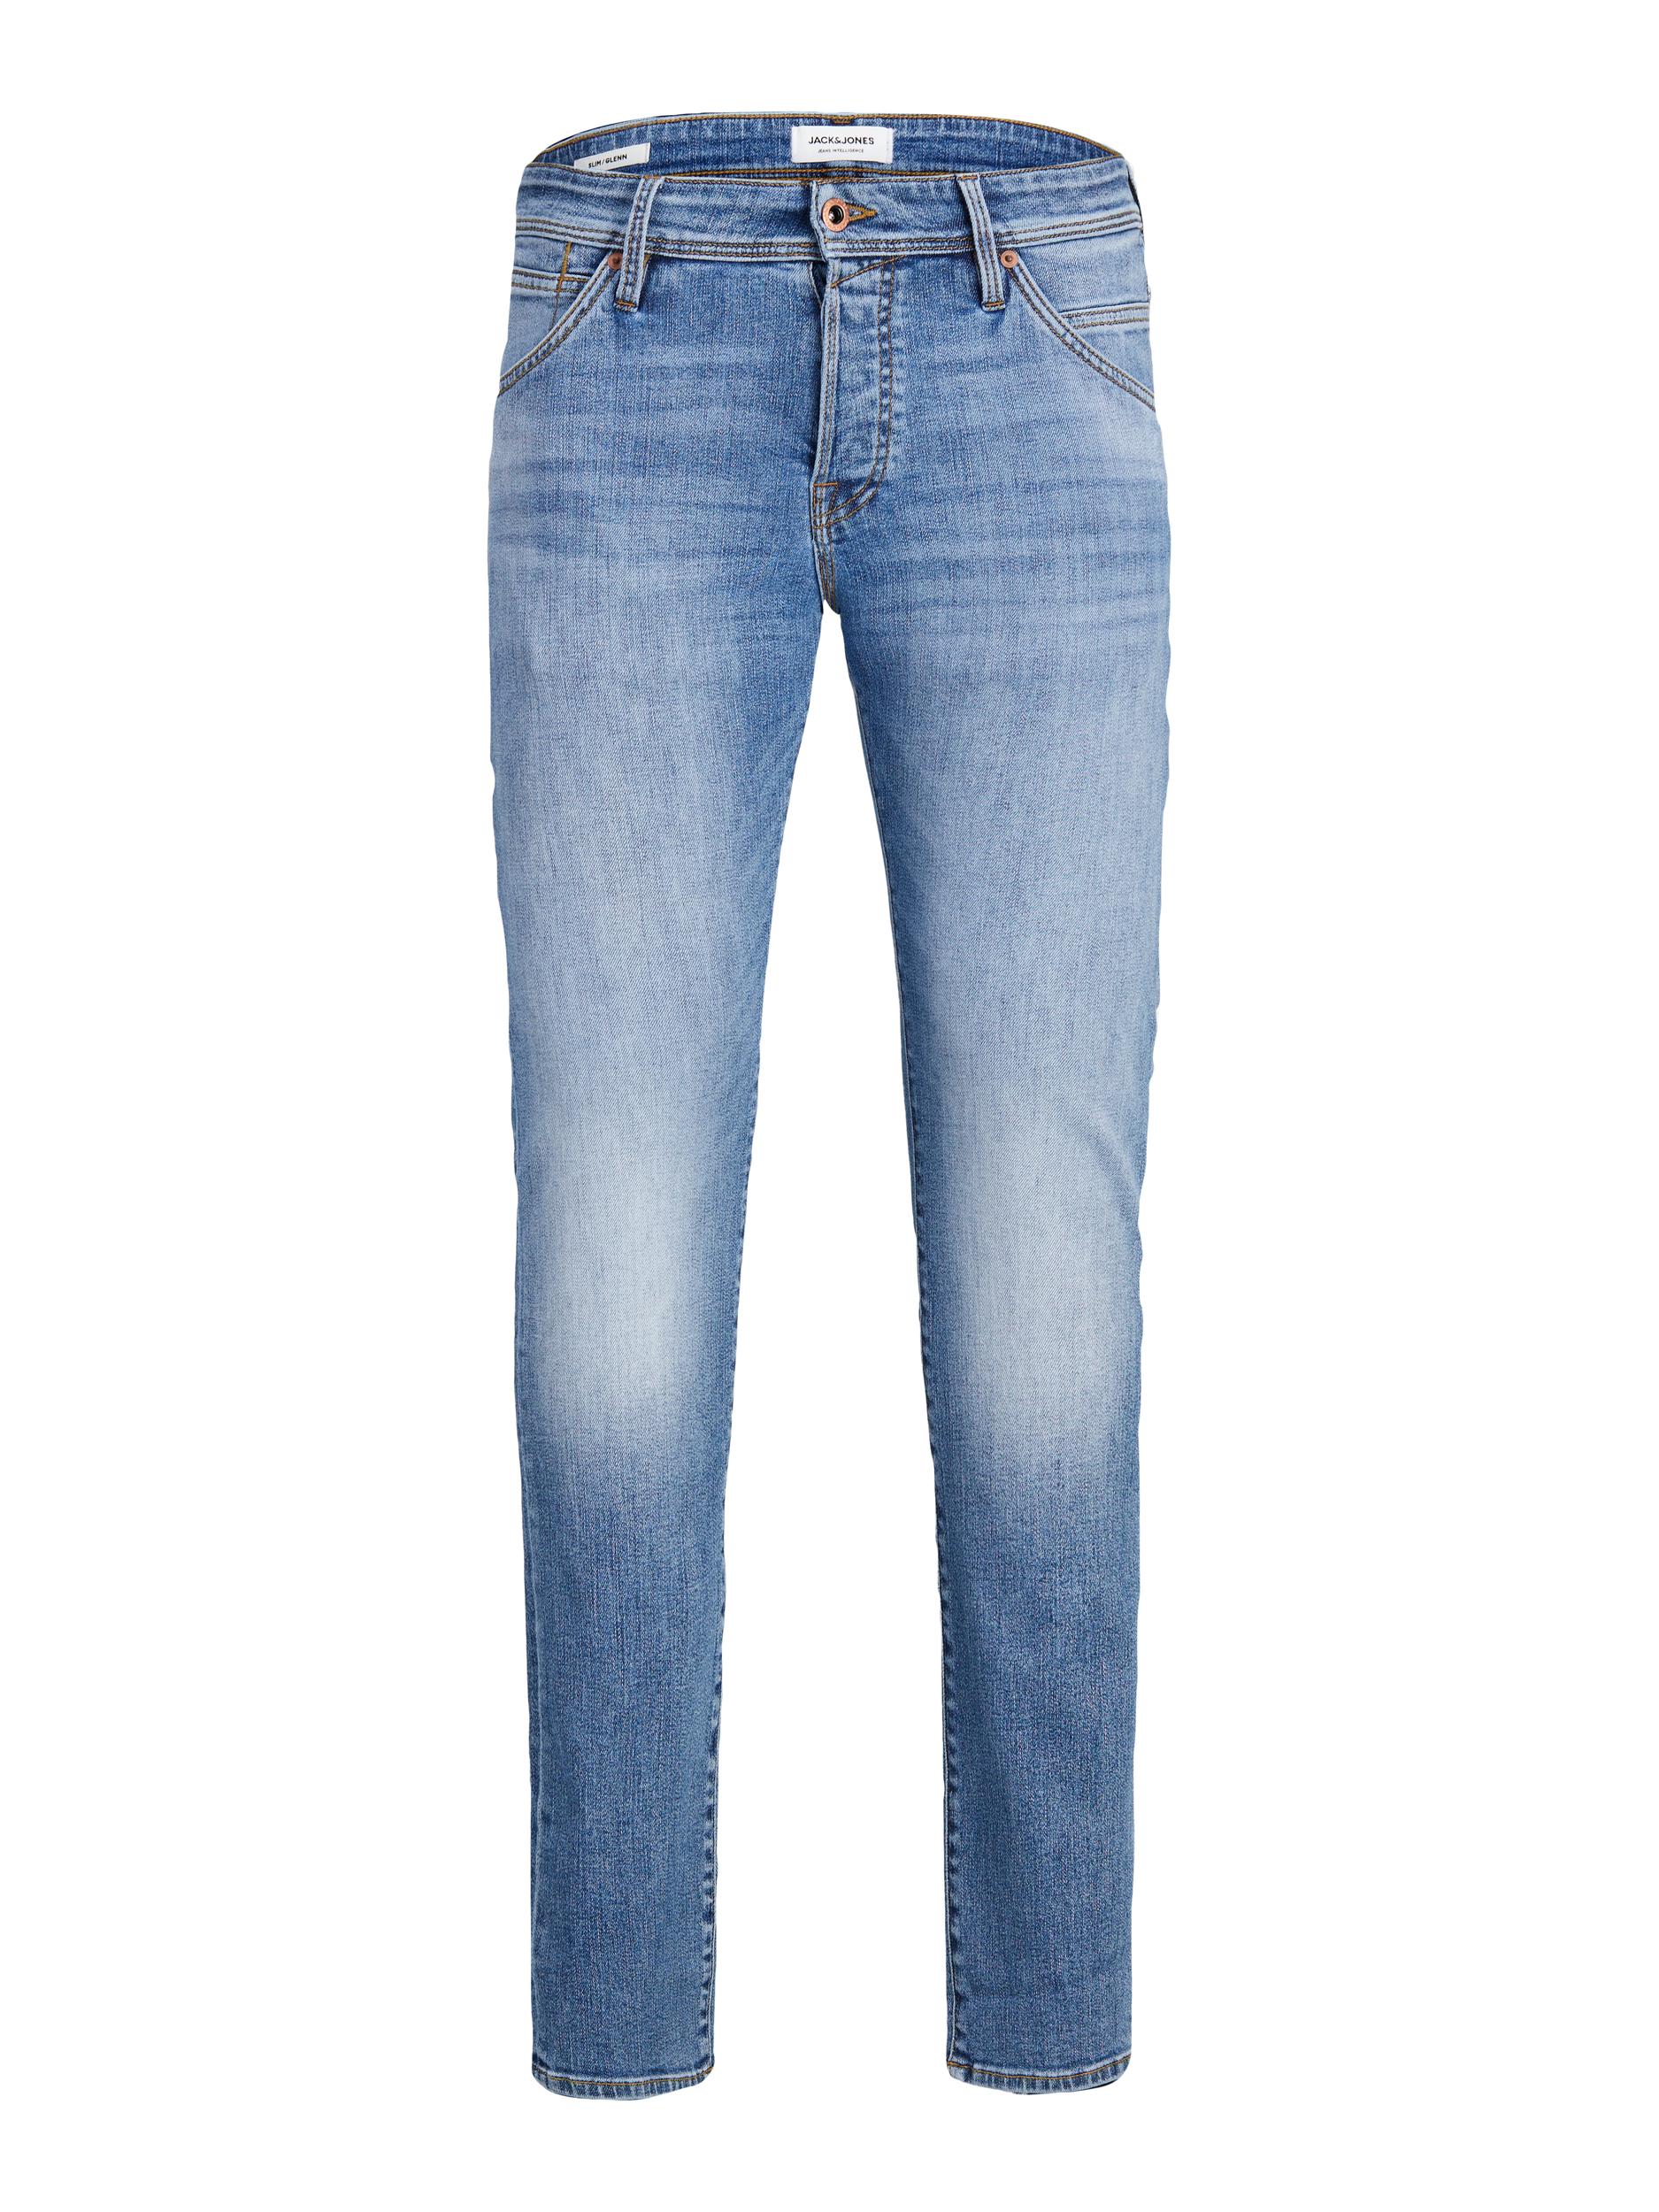  Glen Fox 604 Jeans